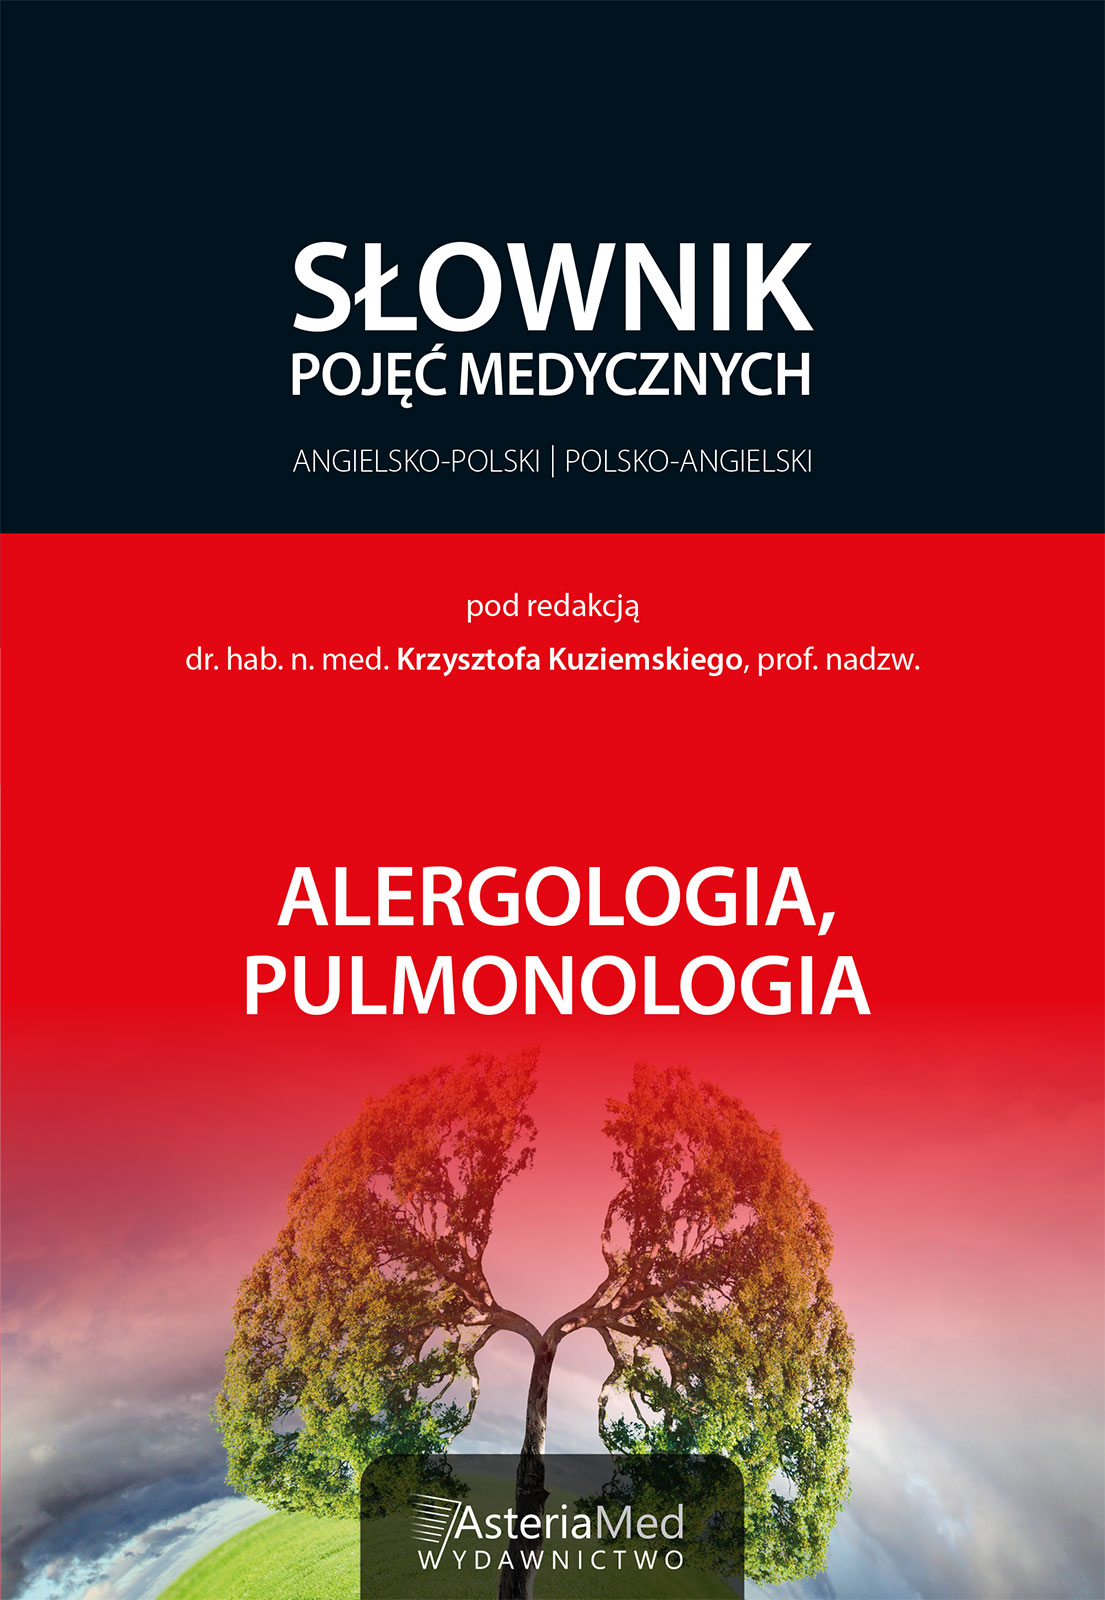 Słownik alergologia